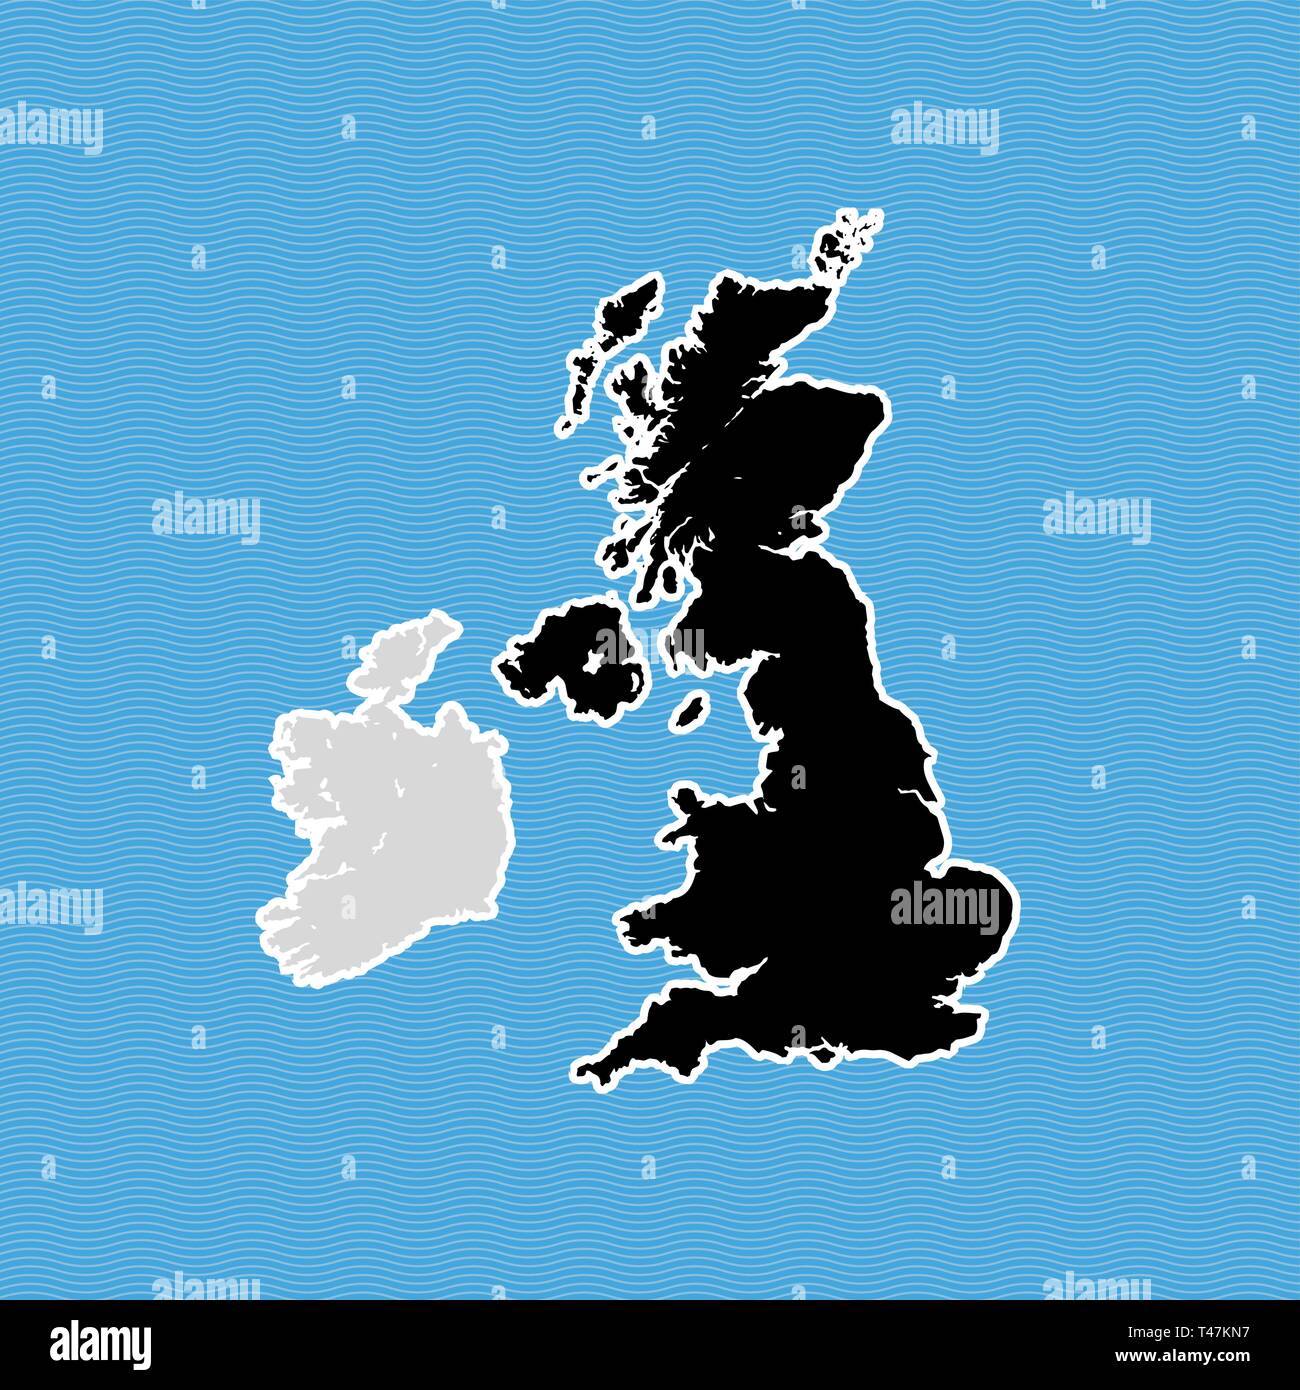 Royaume-uni Brexit carte. La carte avec les îles à la dérive sur fond de l'eau vague bleue. Illustration de Vecteur